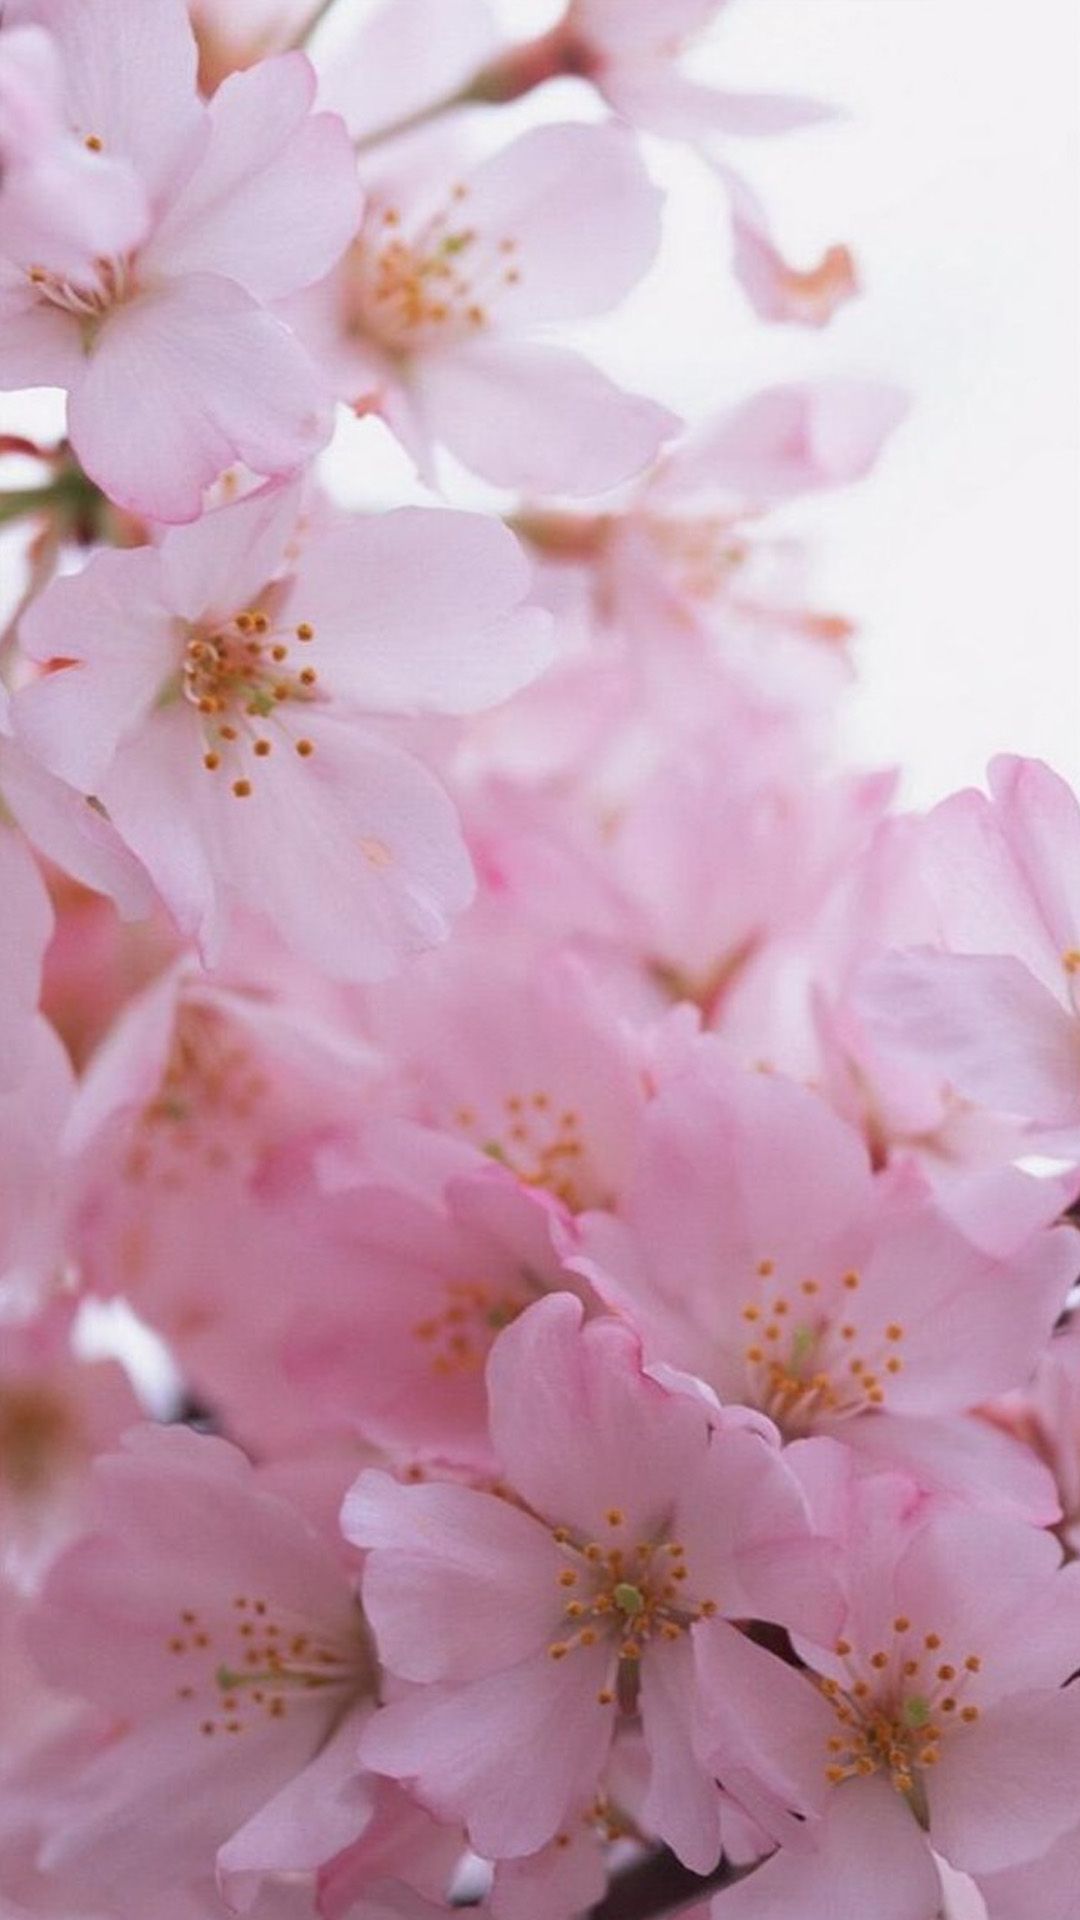 بک گراند شکوفه های صورتی بهاری مناسب انواع گوشی